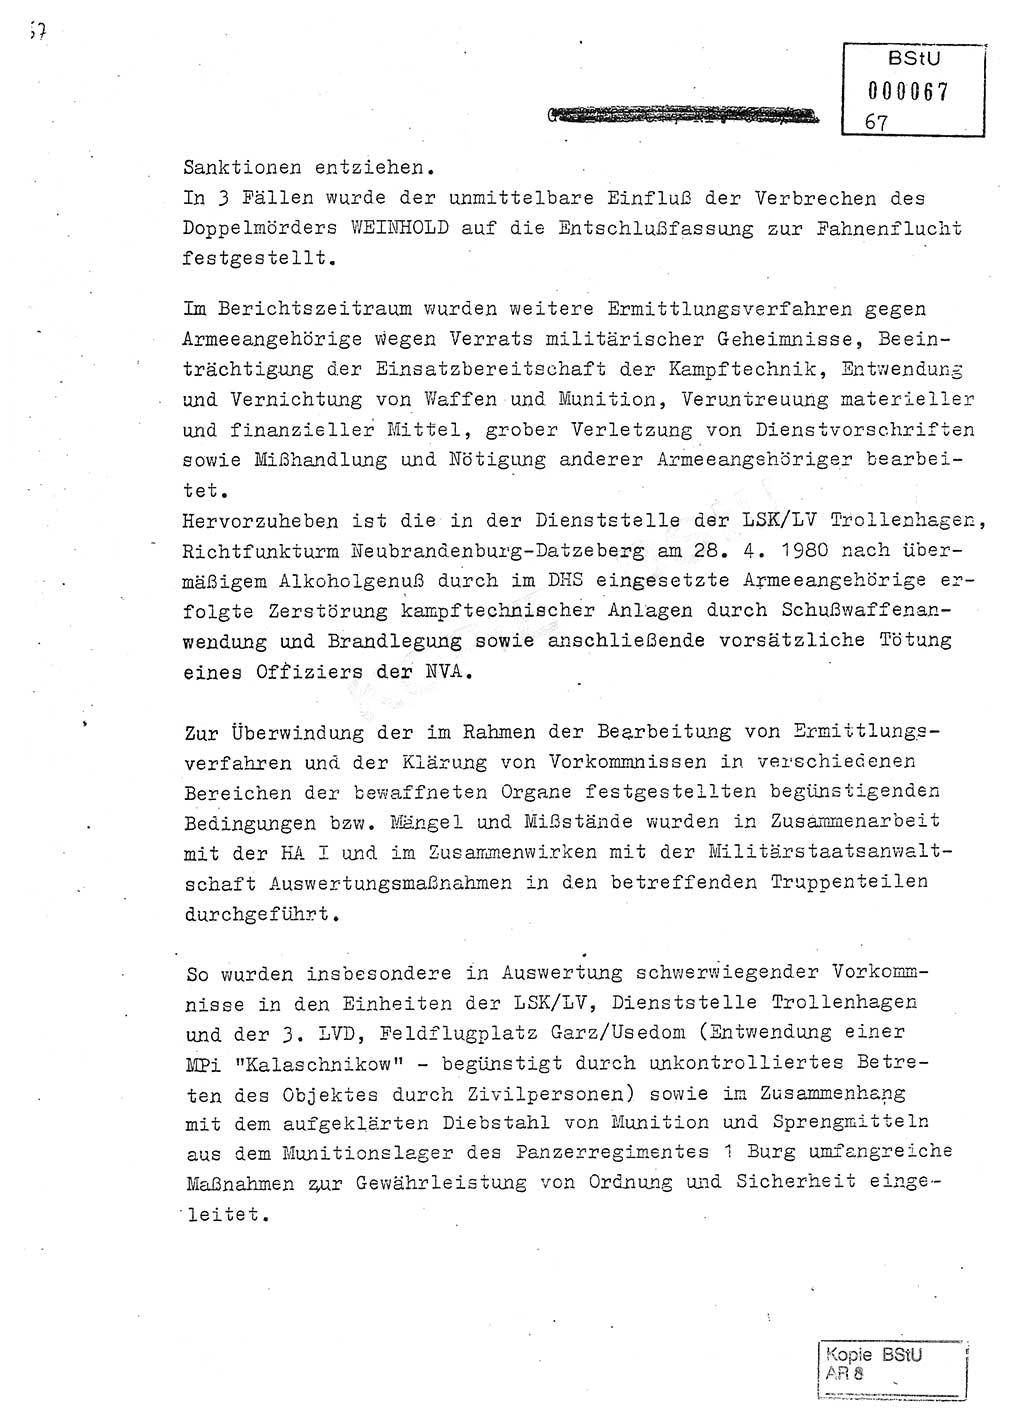 Jahresbericht der Hauptabteilung (HA) Ⅸ 1980, Analyse über die Entwicklung und die Wirksamkeit der politisch-operativen Arbeit der Linie Ⅸ in der Zeit vom 1. Januar 1980 bis 30. September 1980, Ministerium für Staatssicherheit (MfS) der Deutschen Demokratischen Republik (DDR), Hauptabteilung Ⅸ, Geheime Verschlußsache (GVS) 014-660/80, Berlin 1980, Seite 67 (Anal. MfS DDR HA Ⅸ GVS 014-660/80 1980, S. 67)